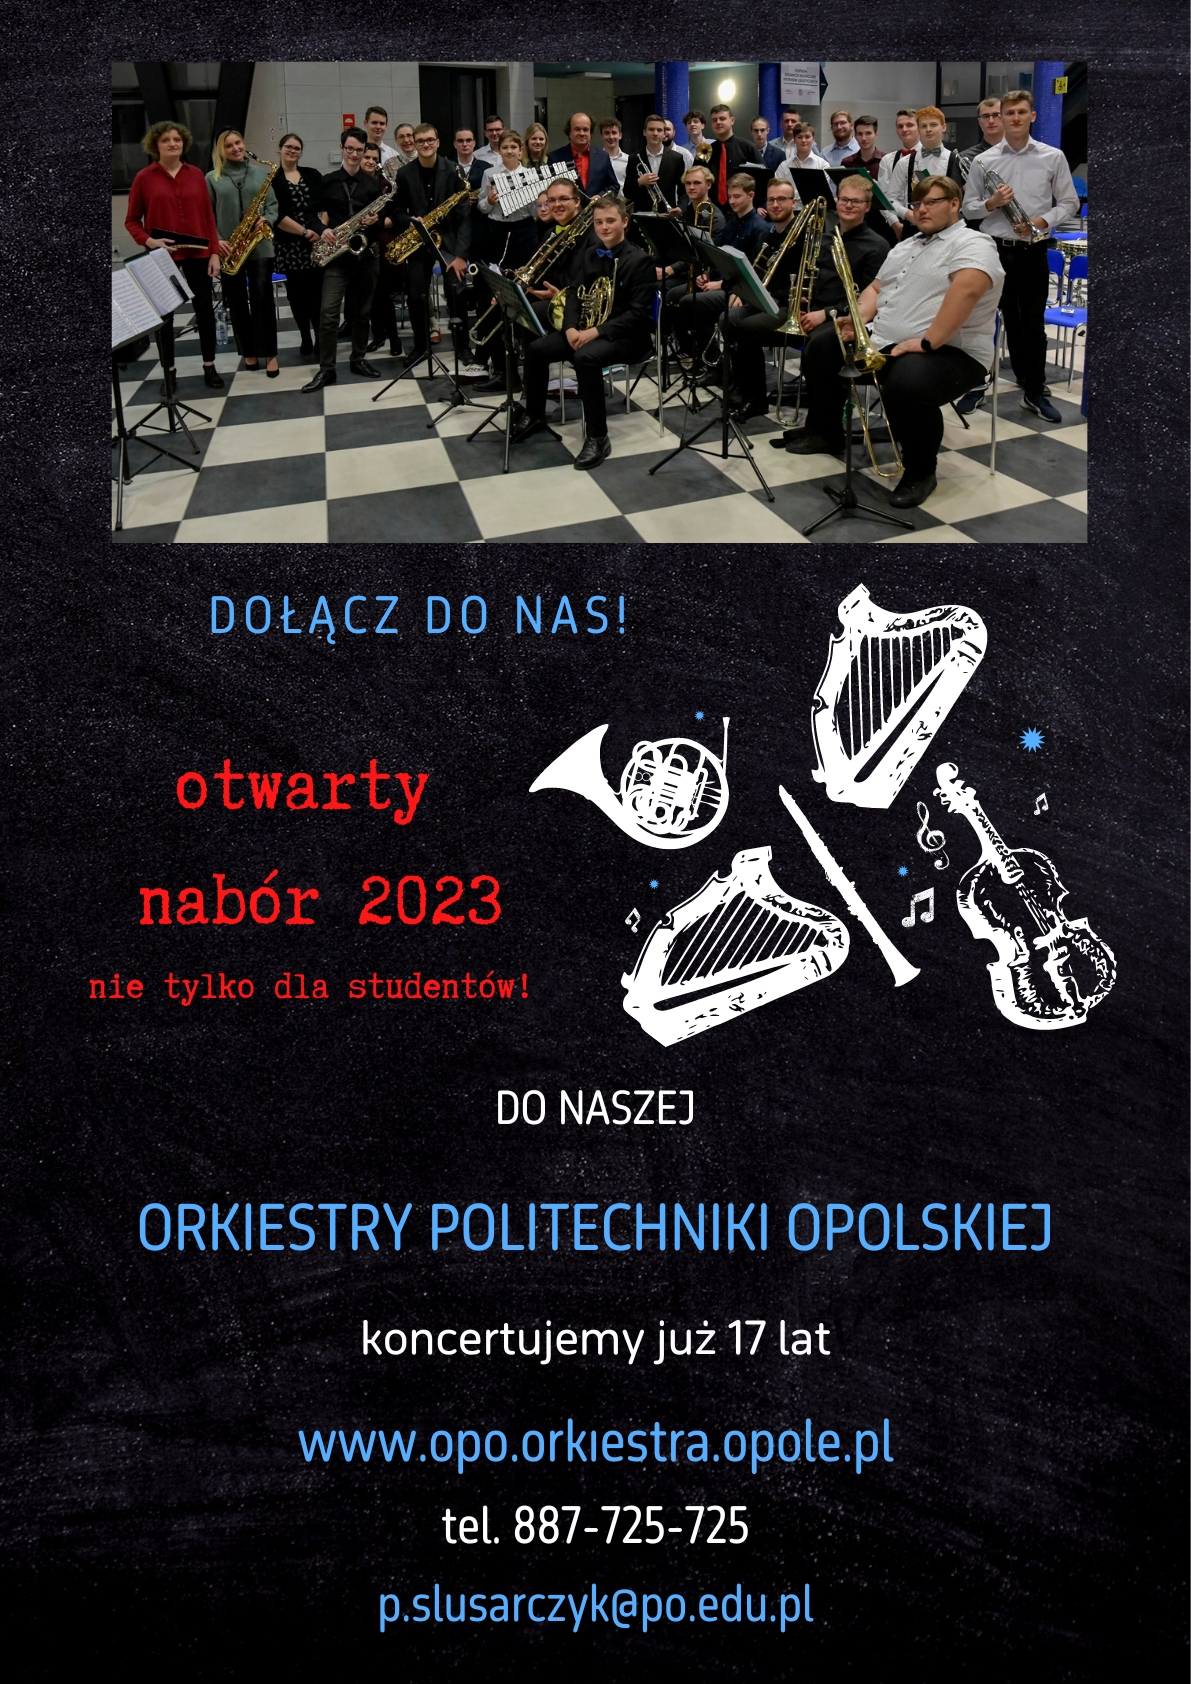 Dołącz do Orkiestry Politechniki Opolskiej! Trwa otwarty nabór dla wszystkich